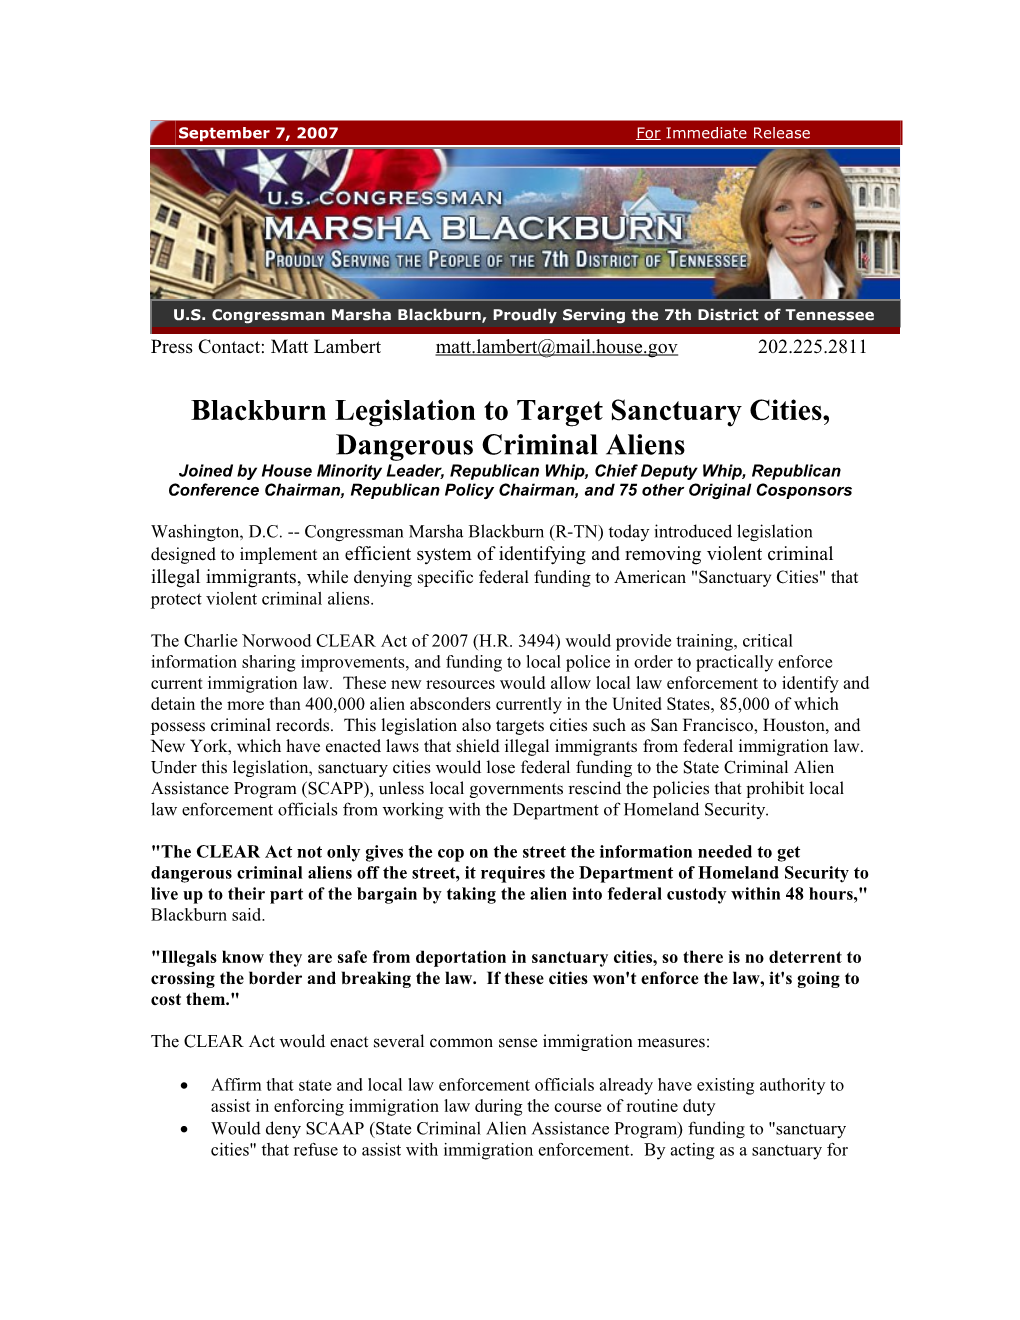 Blackburn Legislation to Target Sanctuary Cities, Dangerous Criminal Aliens